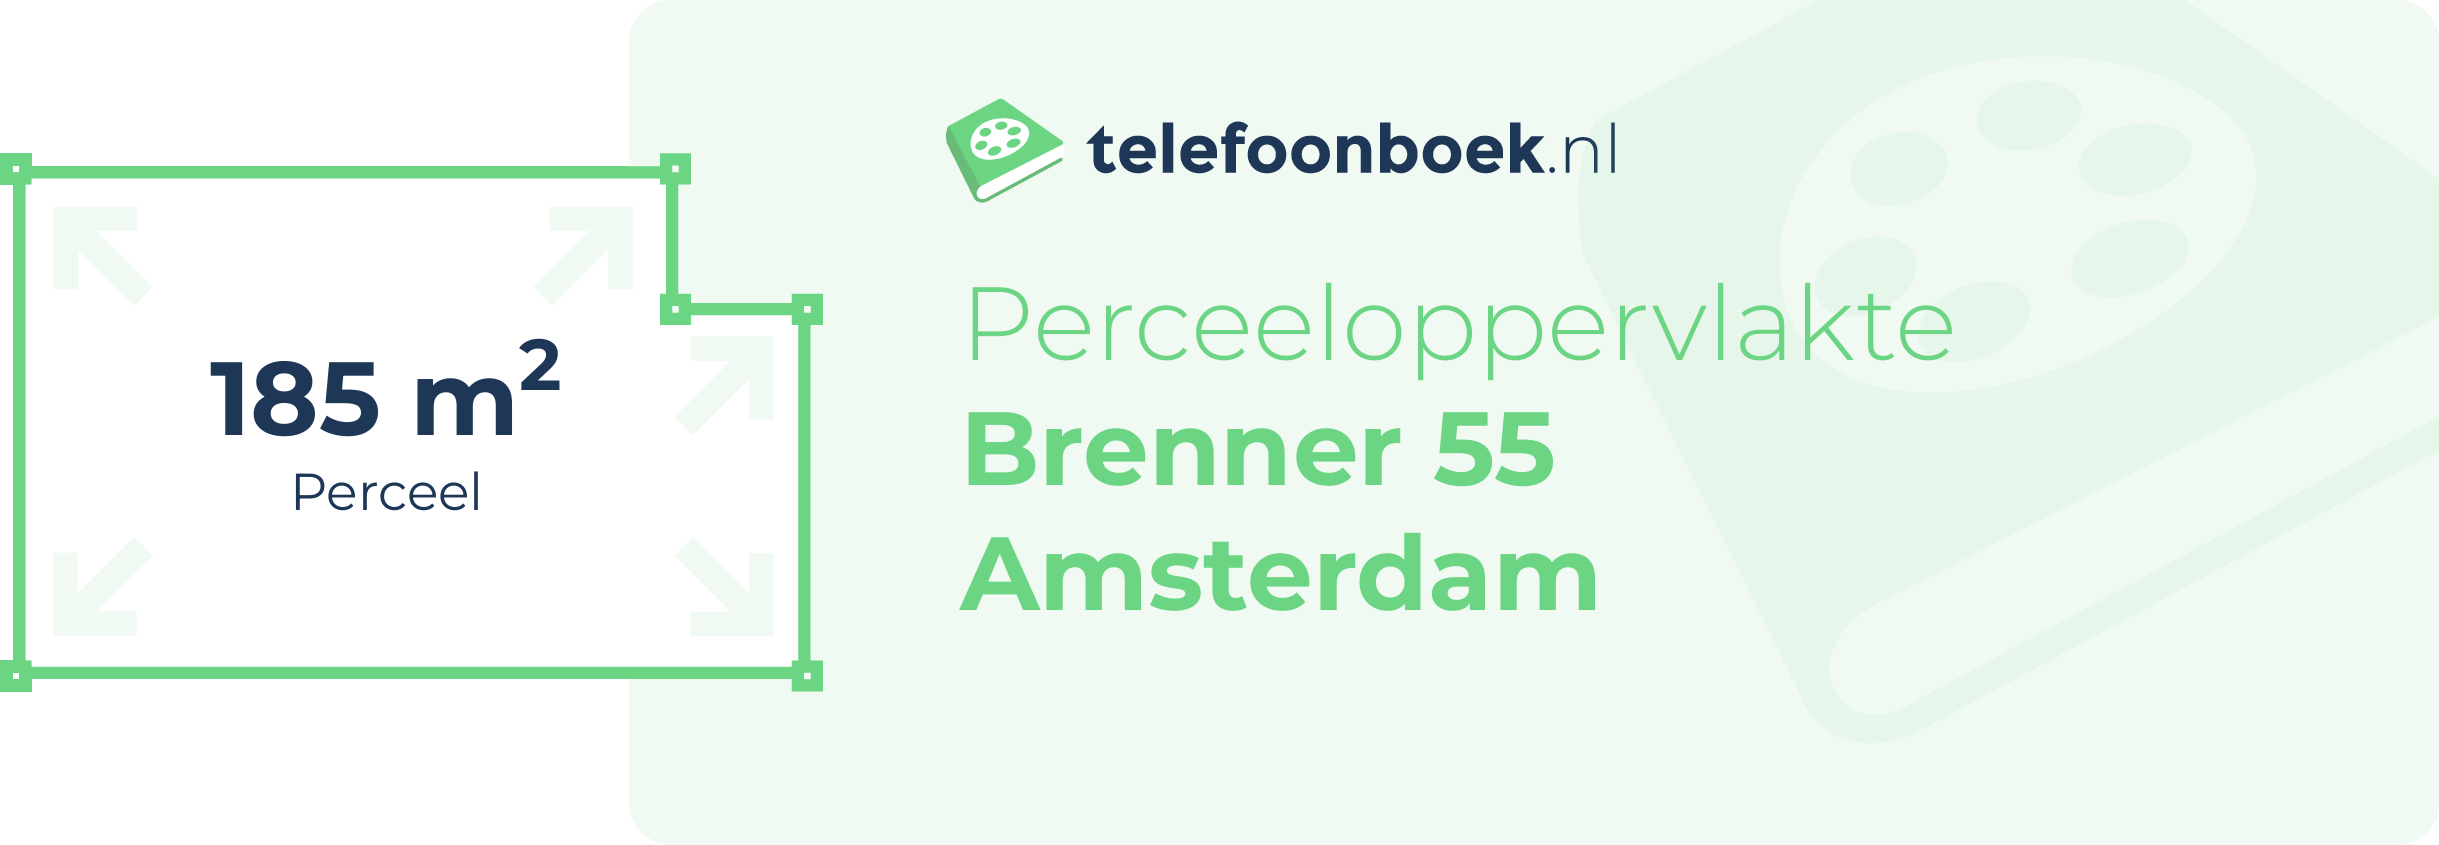 Perceeloppervlakte Brenner 55 Amsterdam